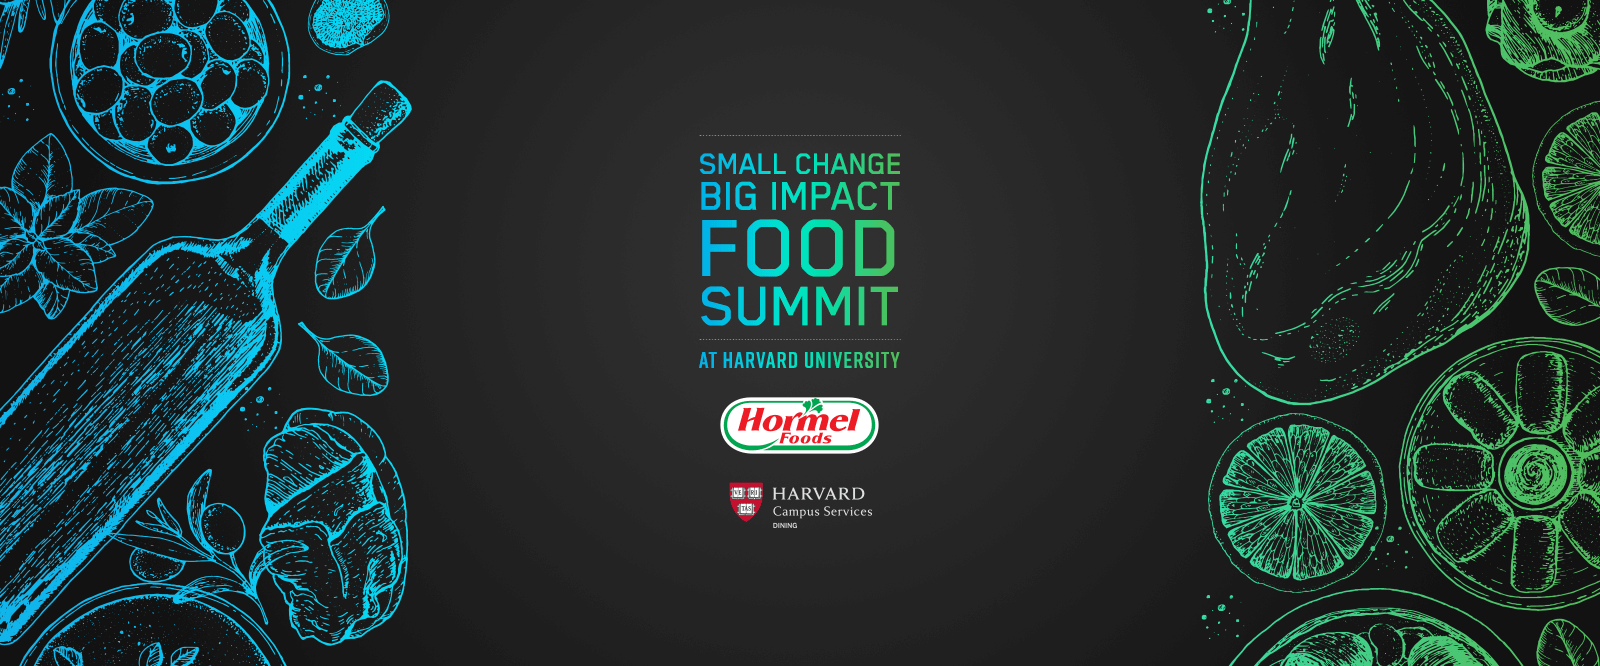 Harvard Food Summit Hero image